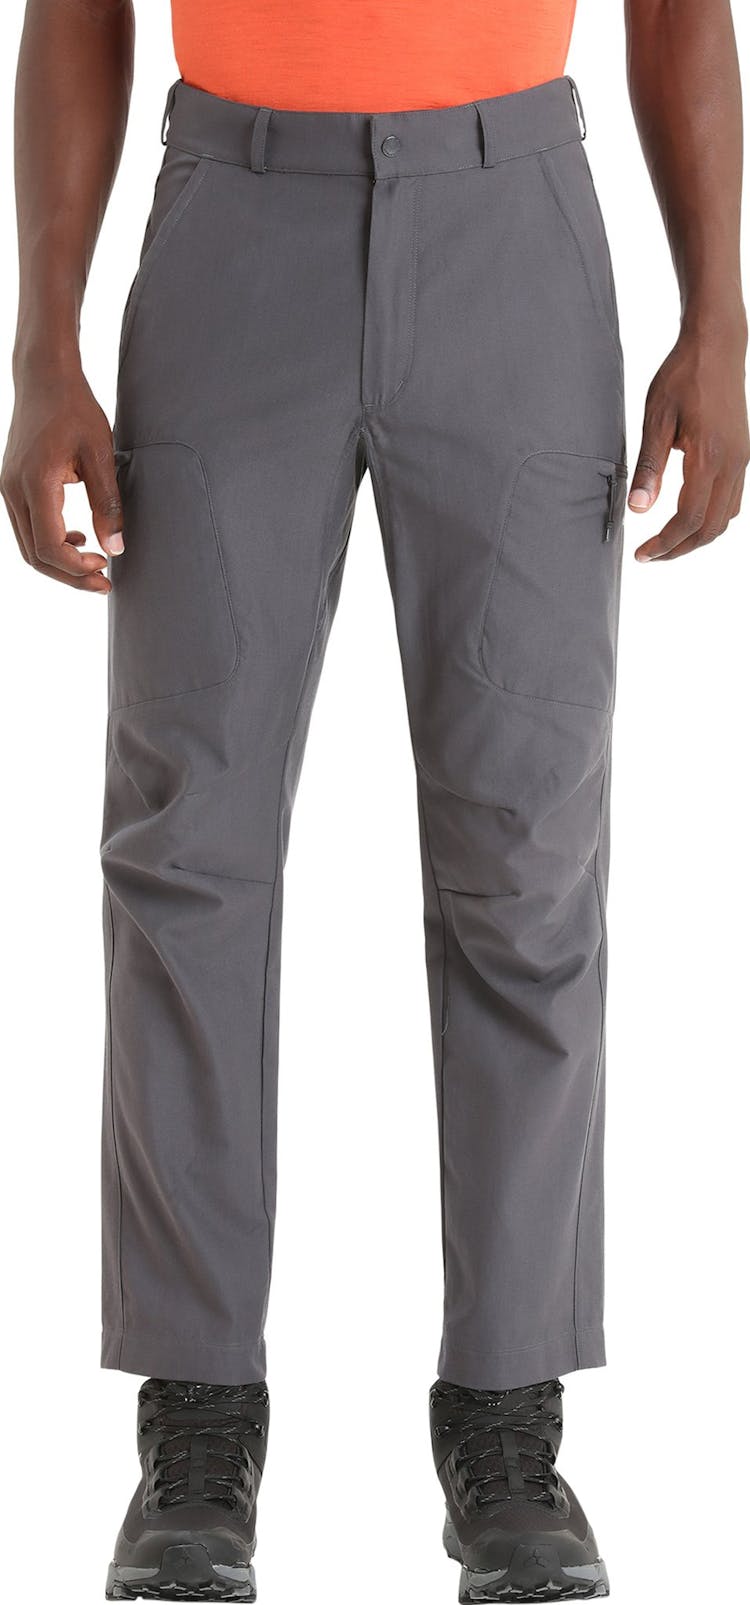 Numéro de l'image de la galerie de produits 5 pour le produit Pantalon de randonnée en mérinos - Homme